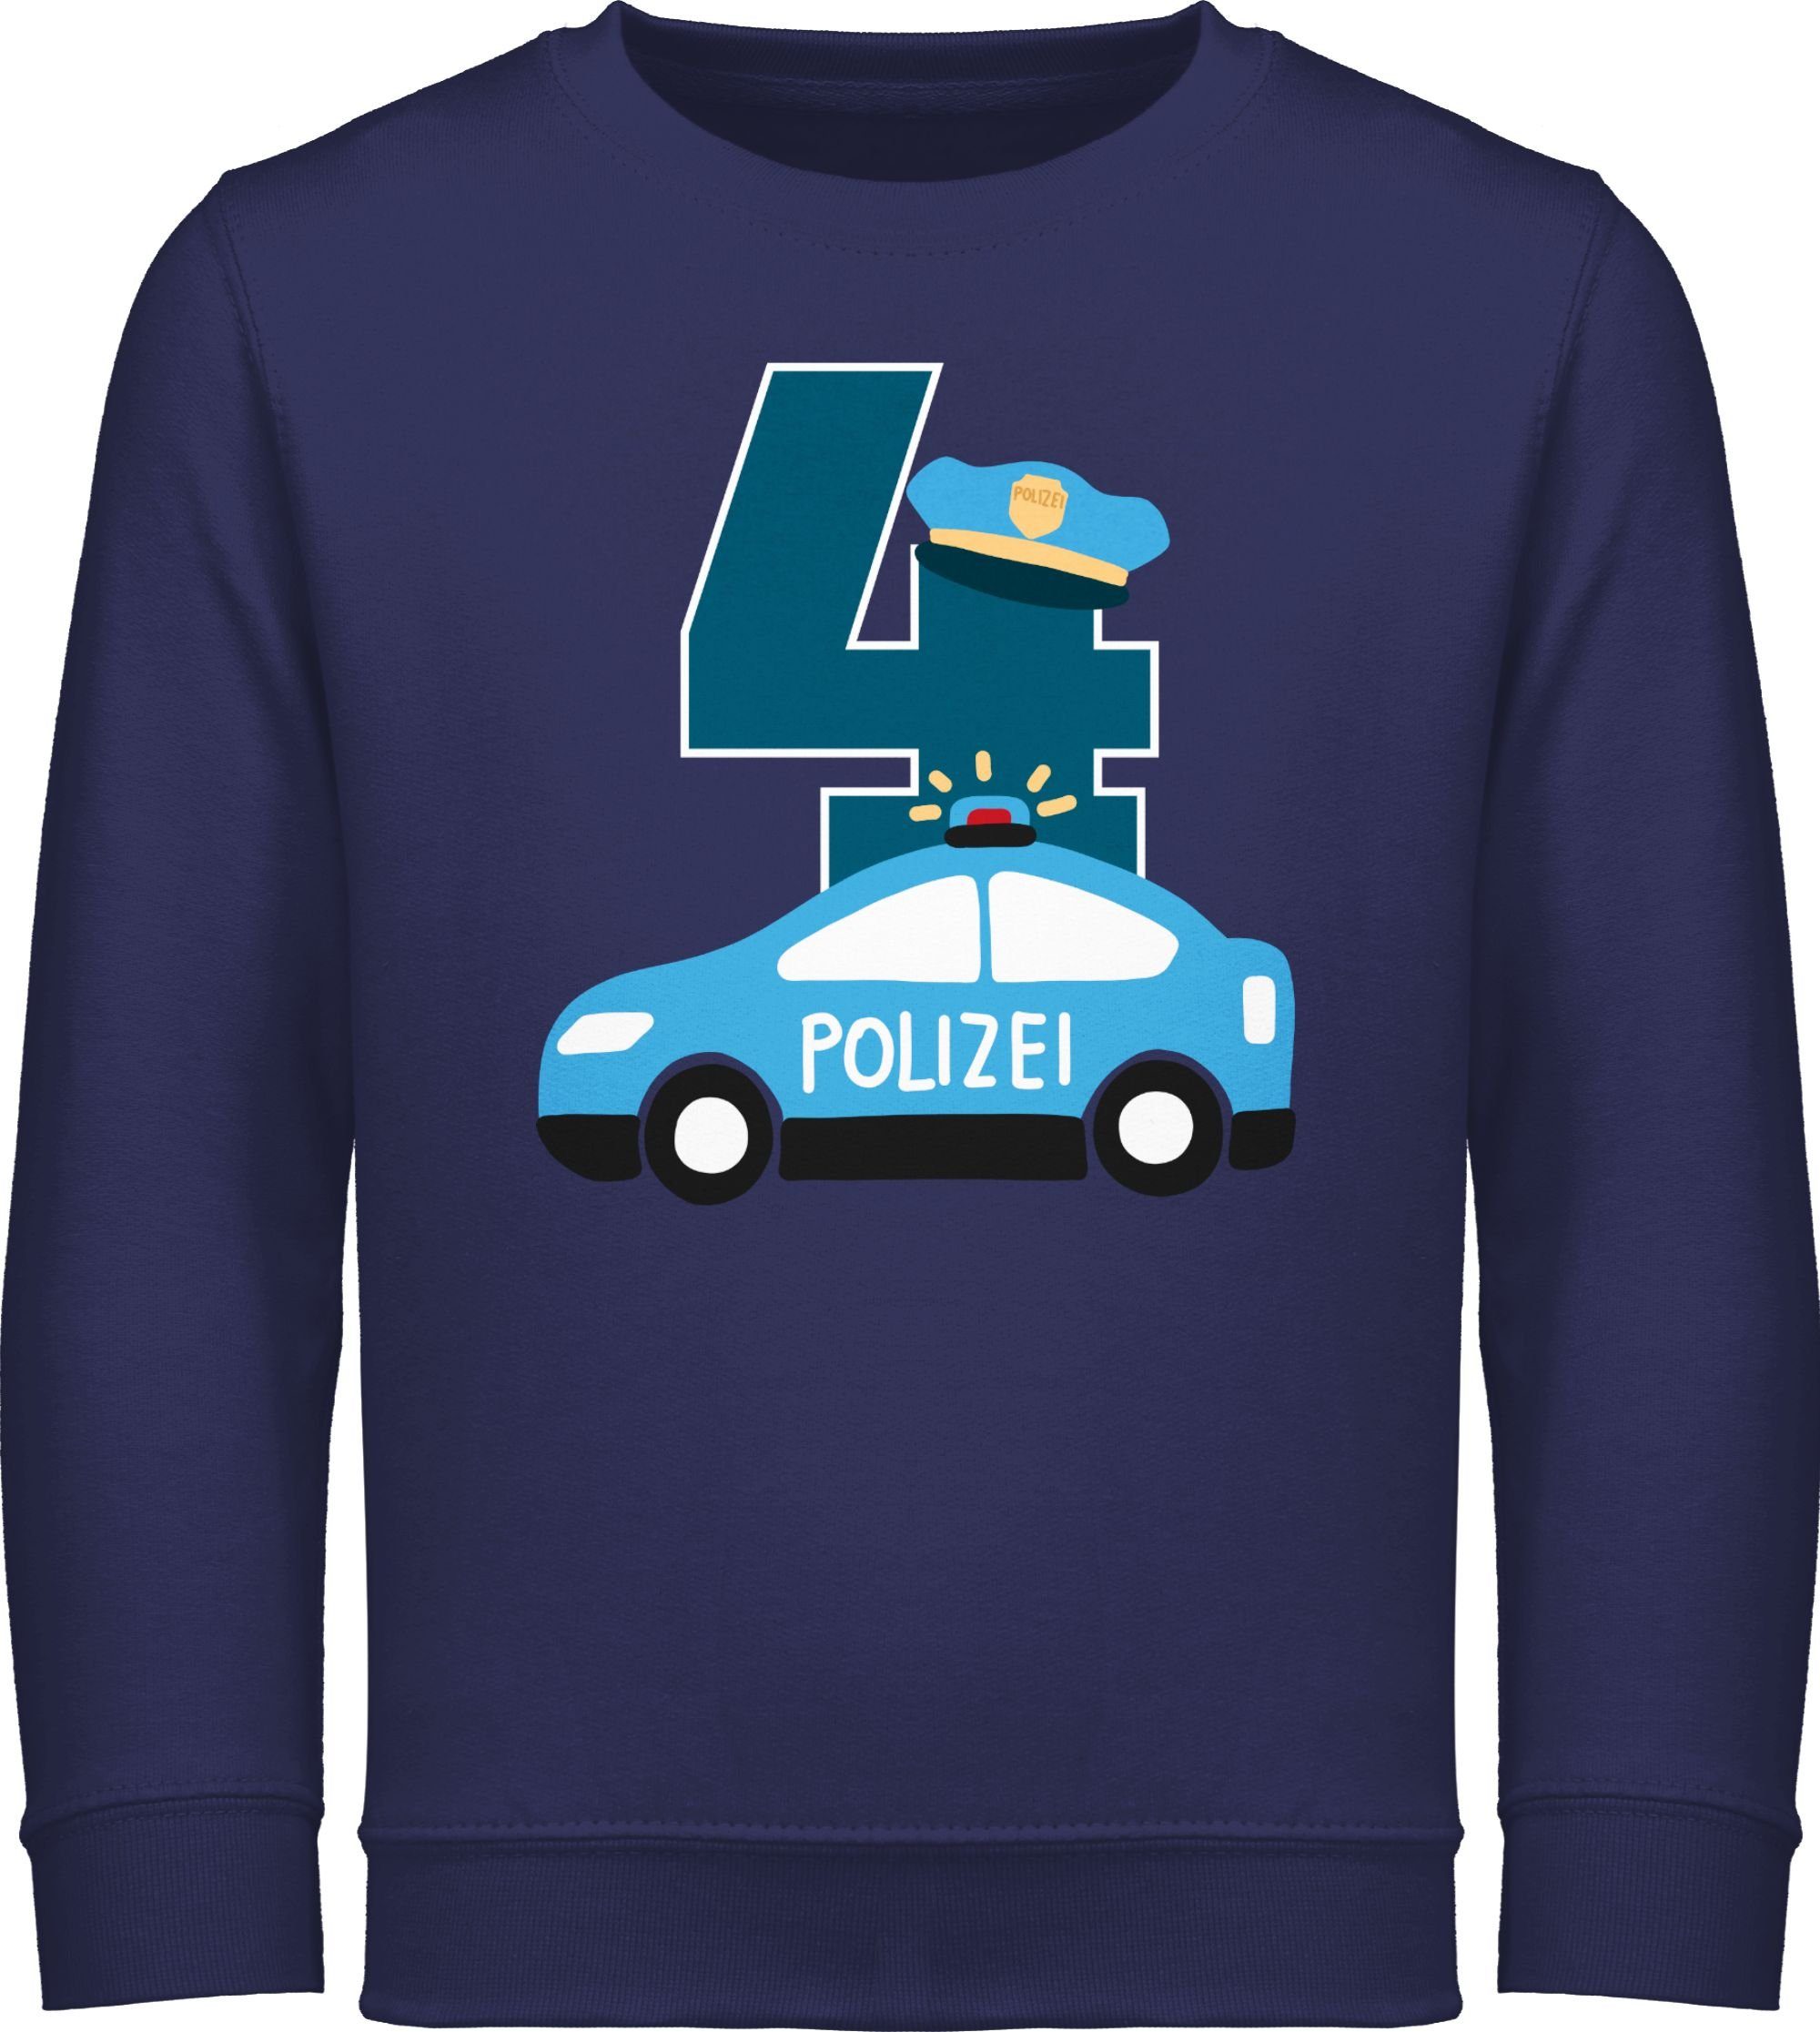 Shirtracer Sweatshirt Polizei Vierter 4. Geburtstag 2 Navy Blau